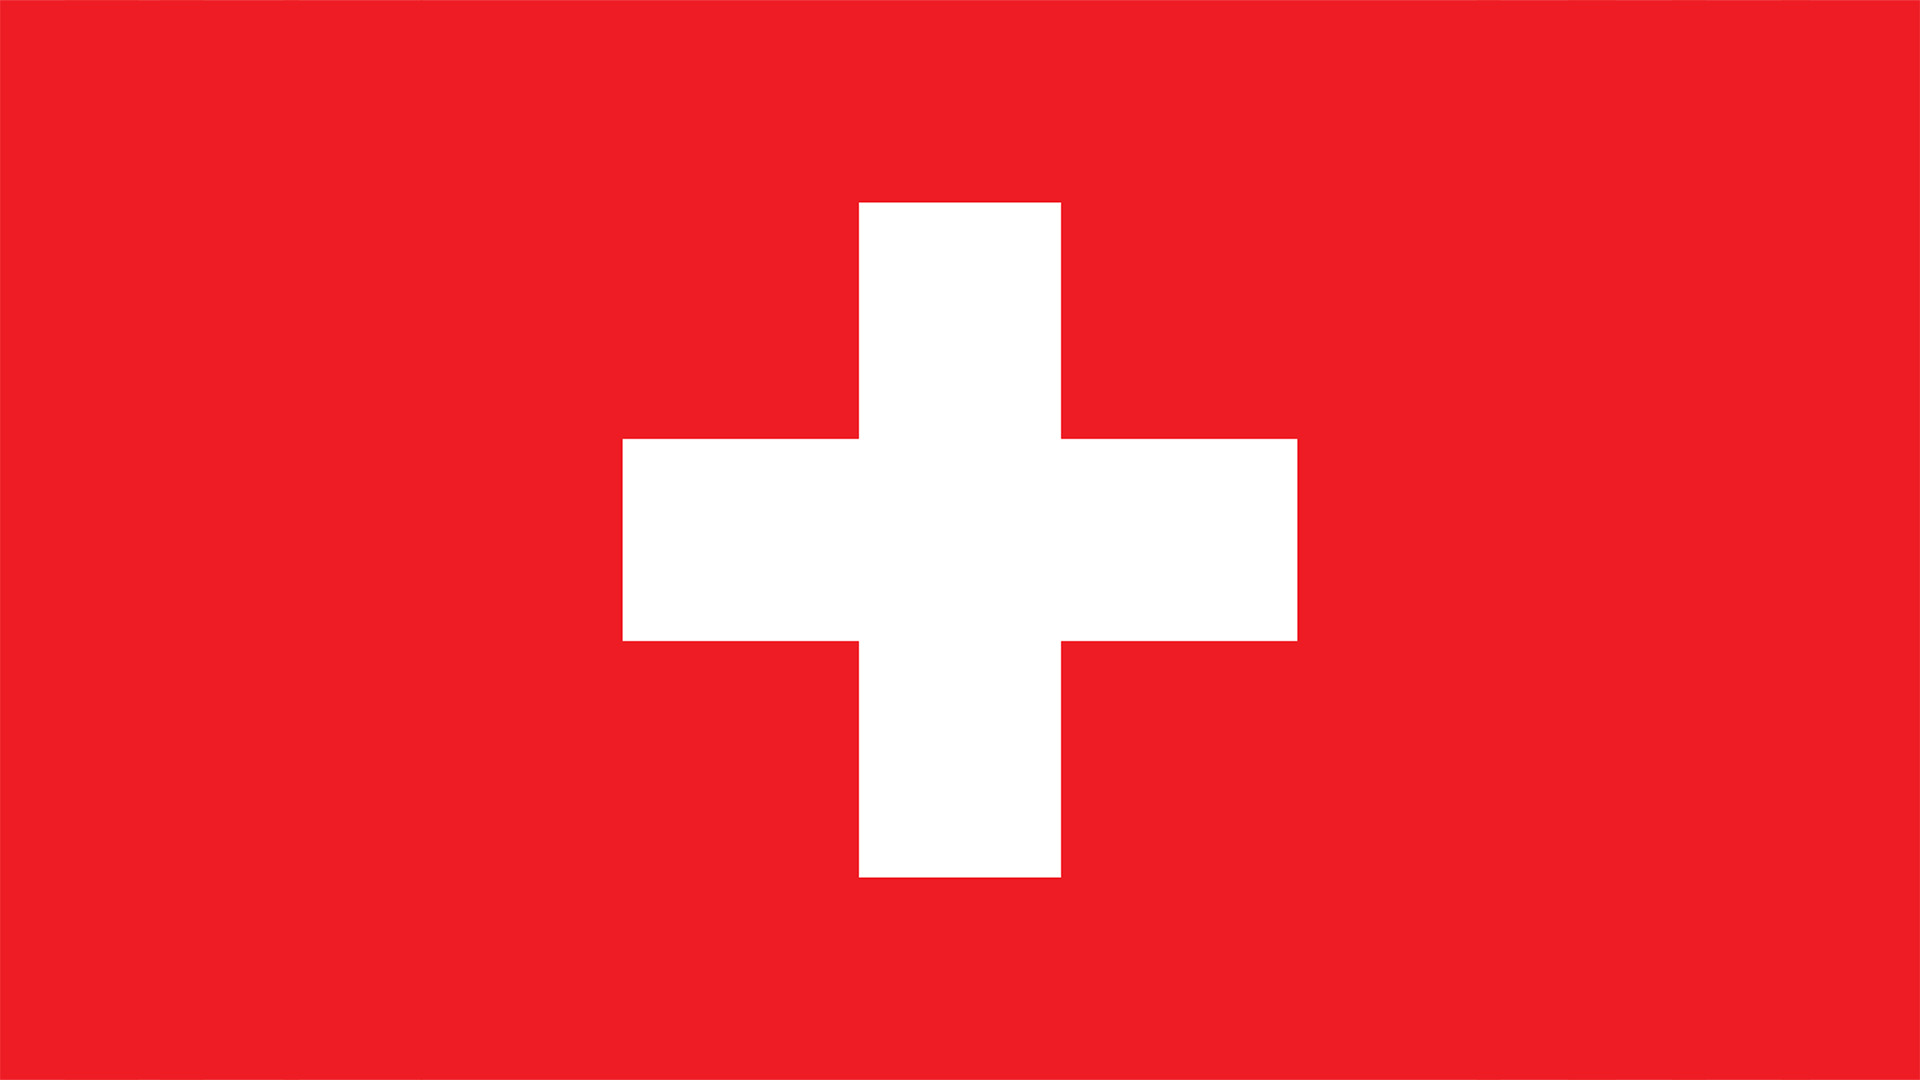 Verkauf Schweiz Sales Switzerland Kochgeschirr Swiss Made